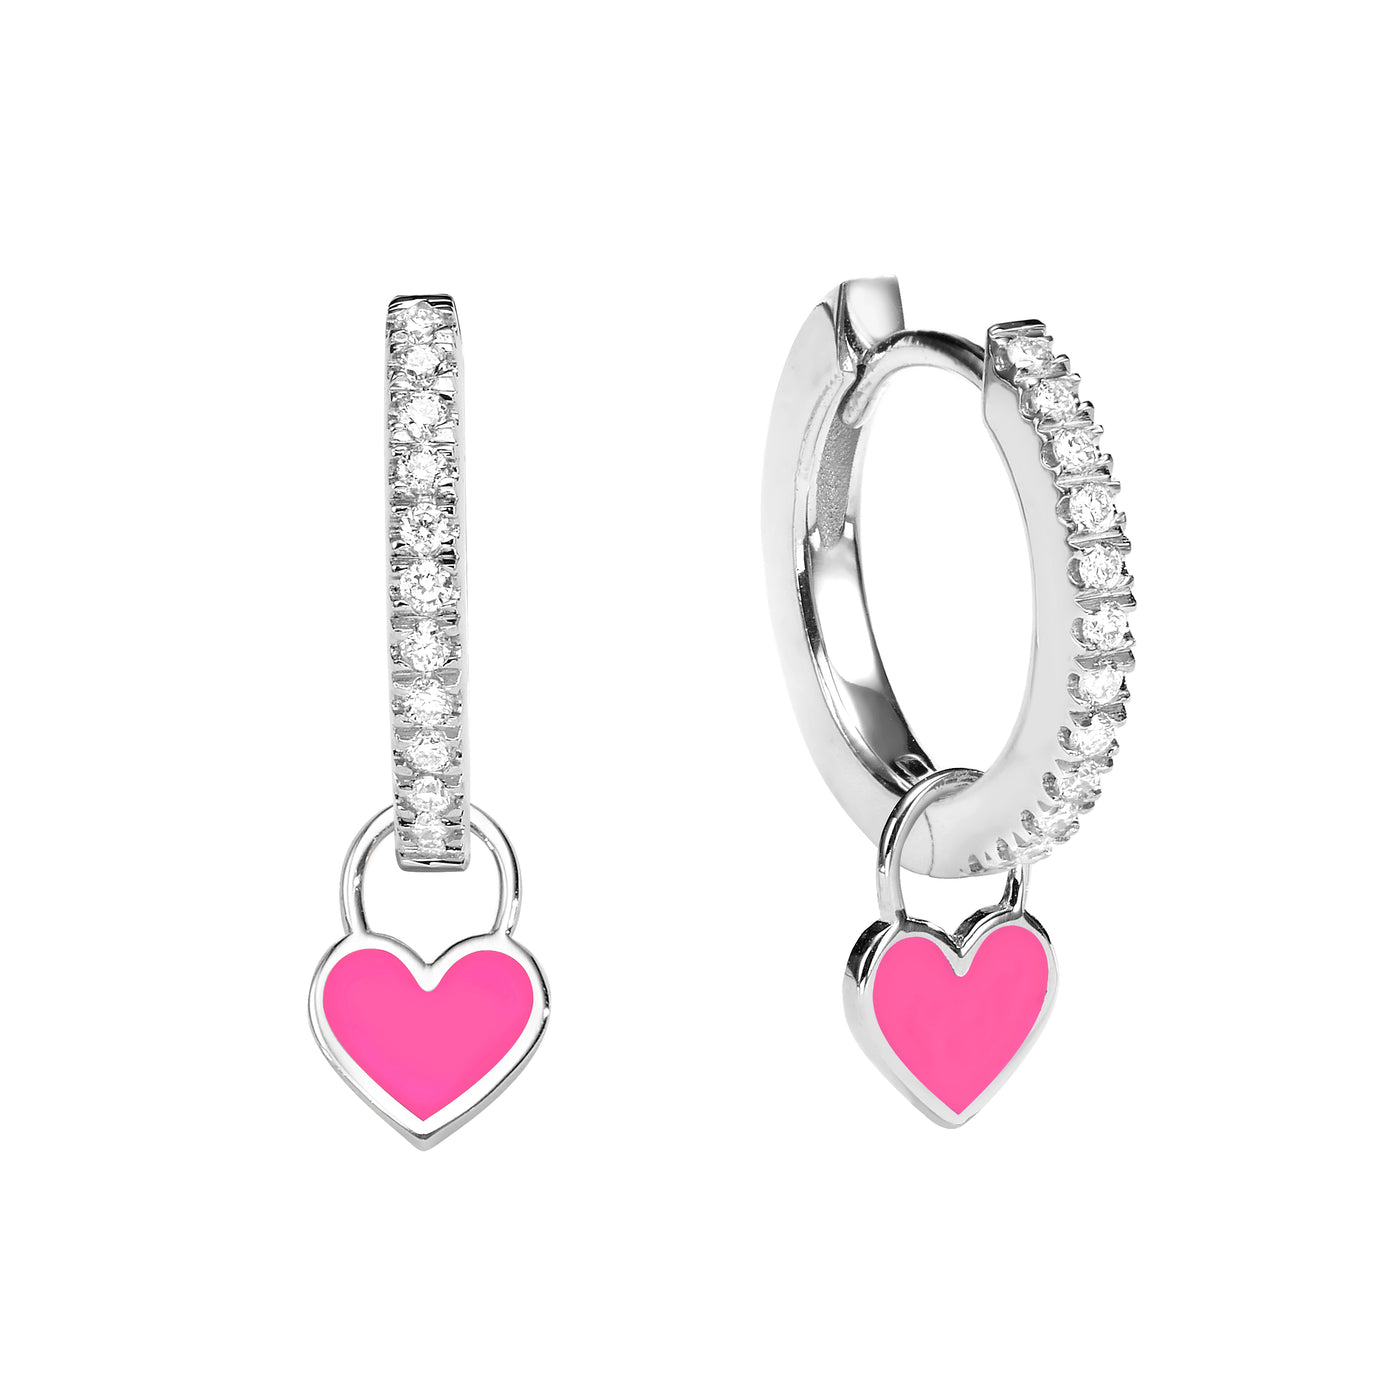 Midi Gypsy hearts earrings- Neon pink